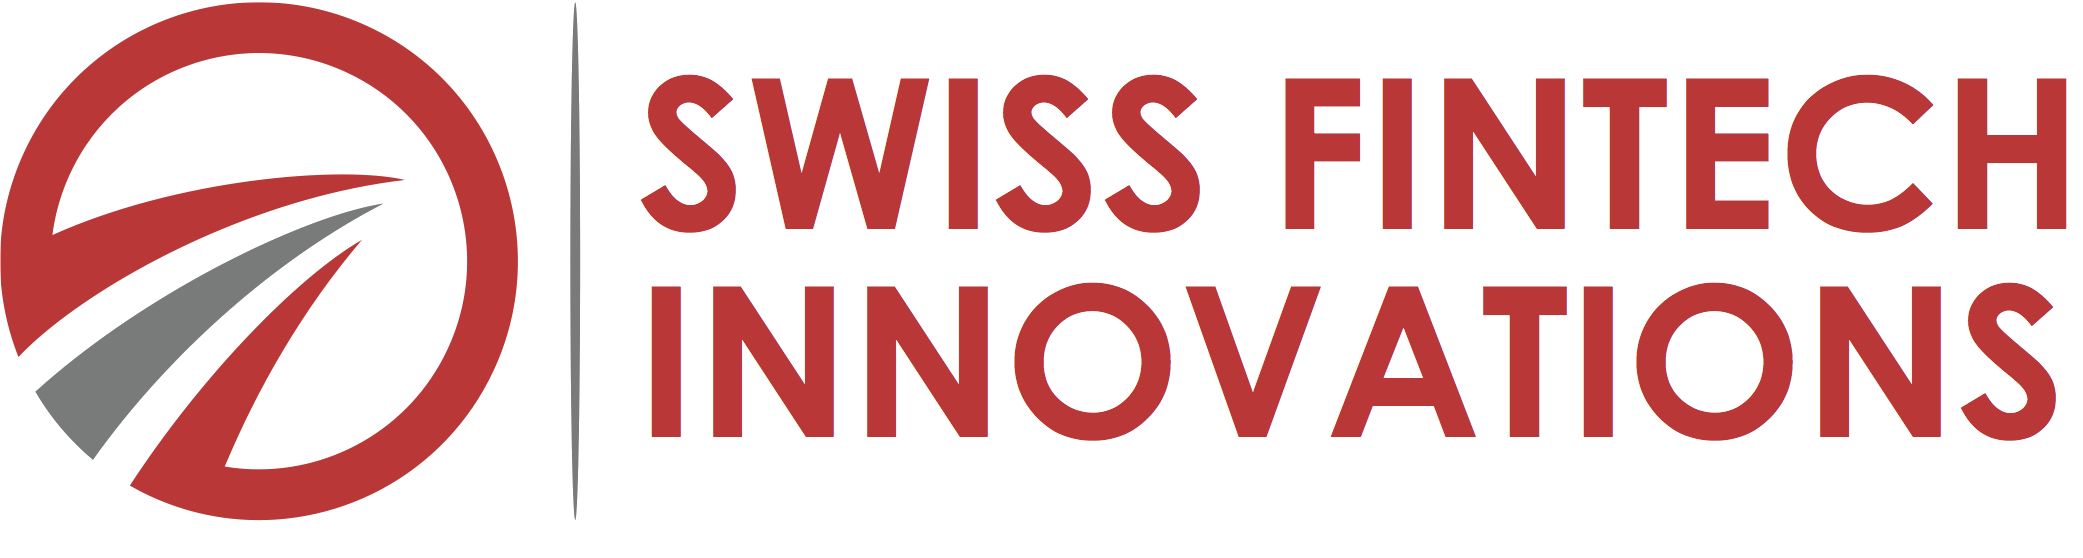 Swiss Fintech Innovations